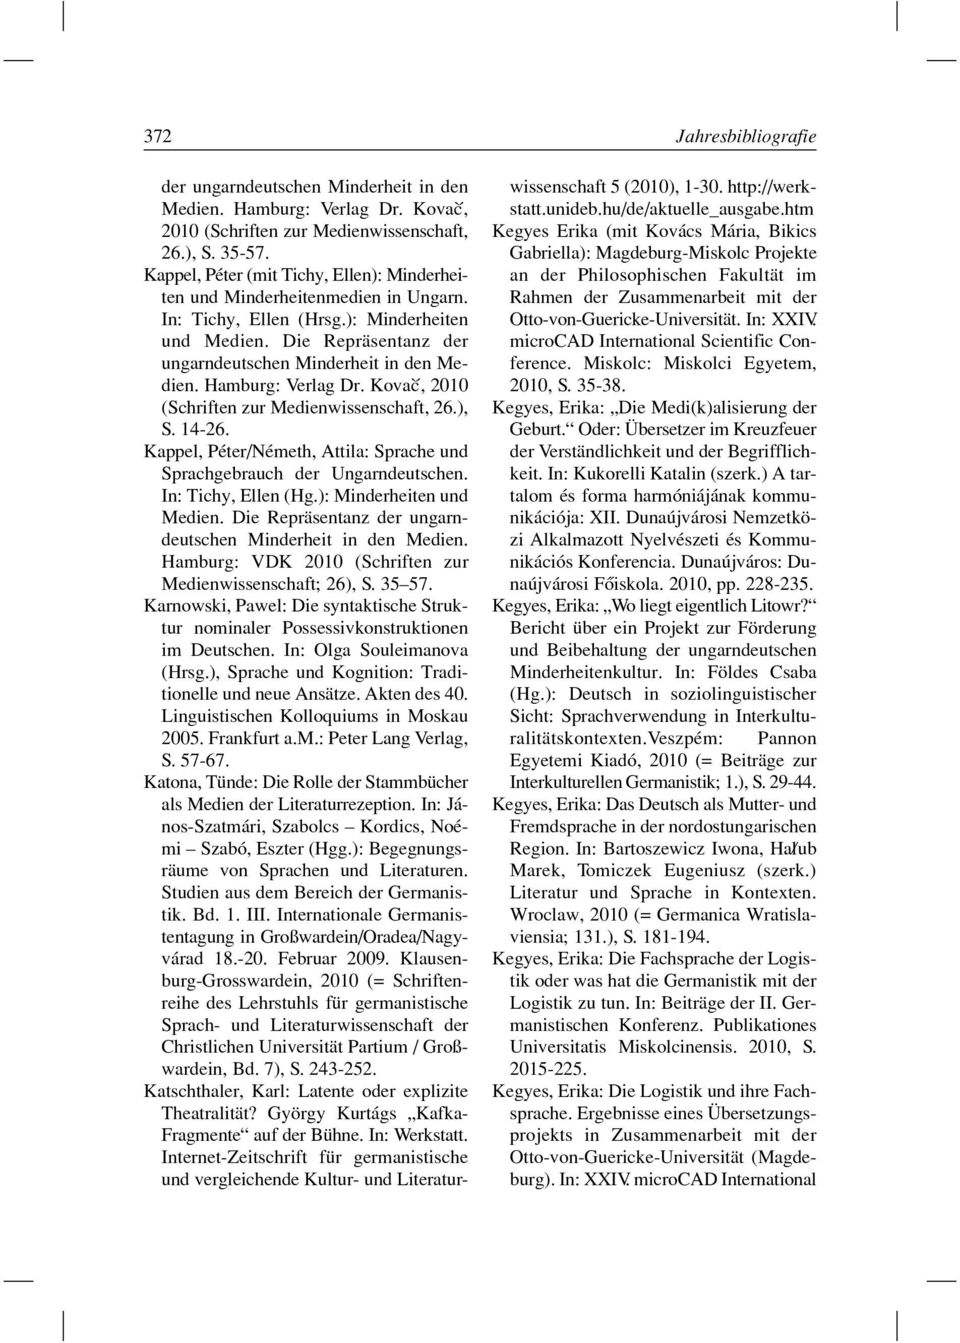 Hamburg: Verlag Dr. Kovac`, 2010 (Schriften zur Medienwissenschaft, 26.), S. 14-26. Kappel, Péter/Németh, Attila: Sprache und Sprachgebrauch der Ungarndeutschen. In: Tichy, Ellen (Hg.